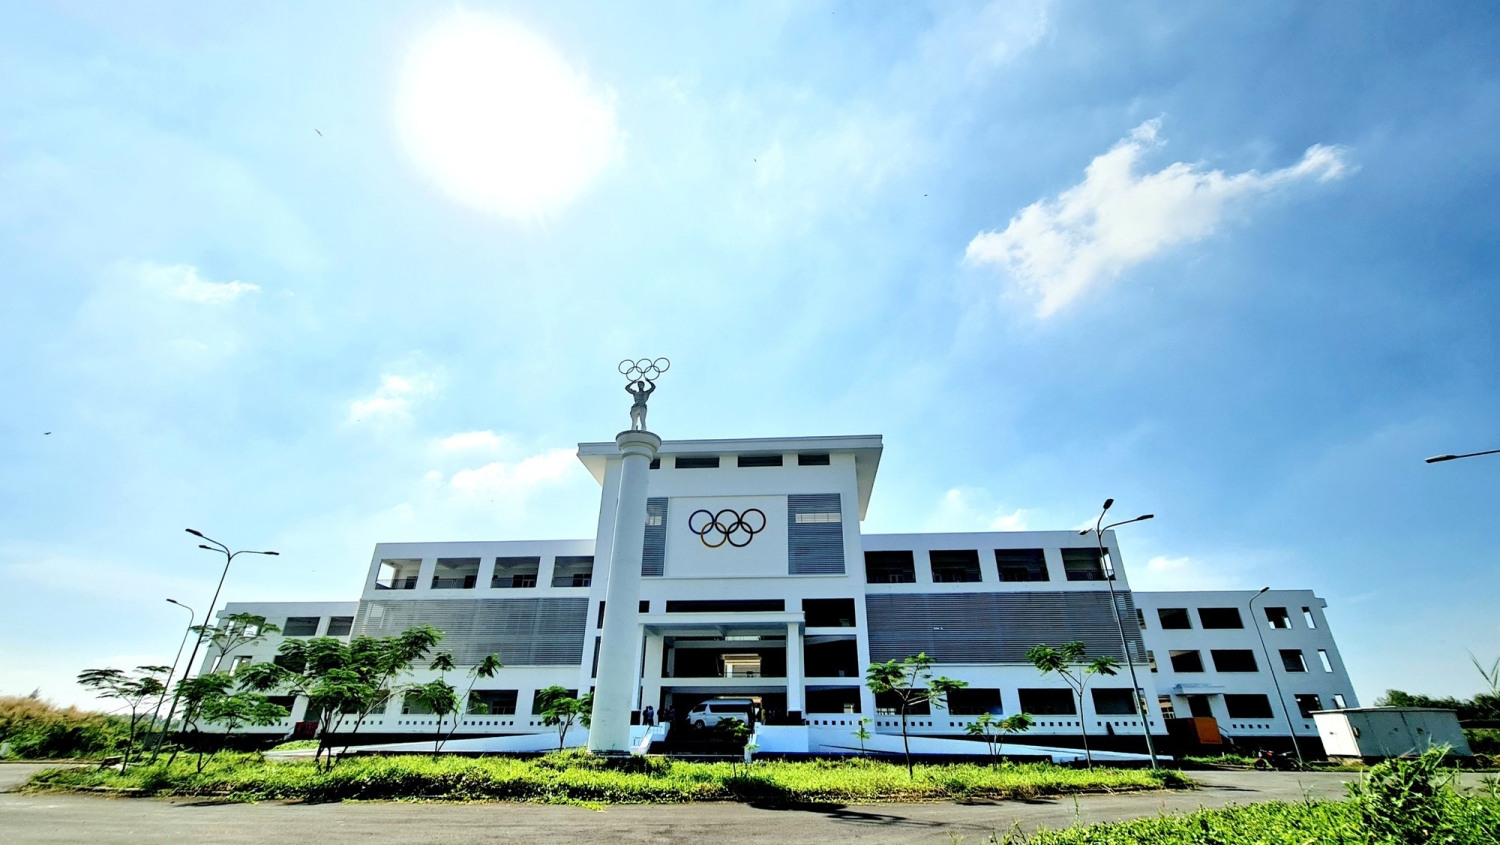 Trường ĐH Mở TP.HCM dời sang huyện Nhà Bè tín hiệu tích cực cho bất động sản Nhà Bè